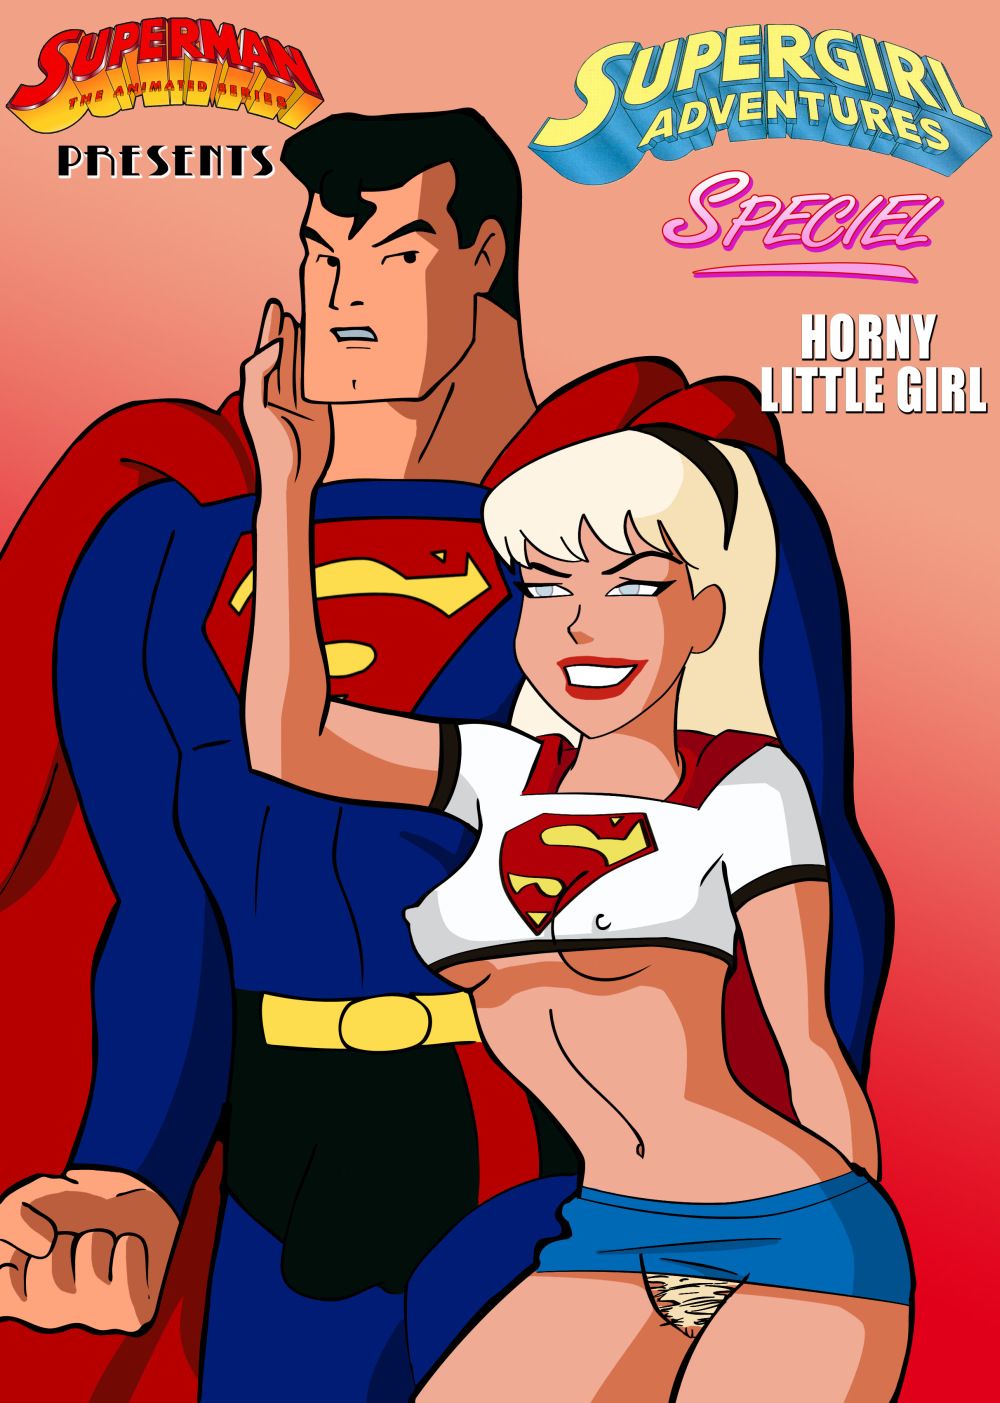 best of Girl cartoon sex super